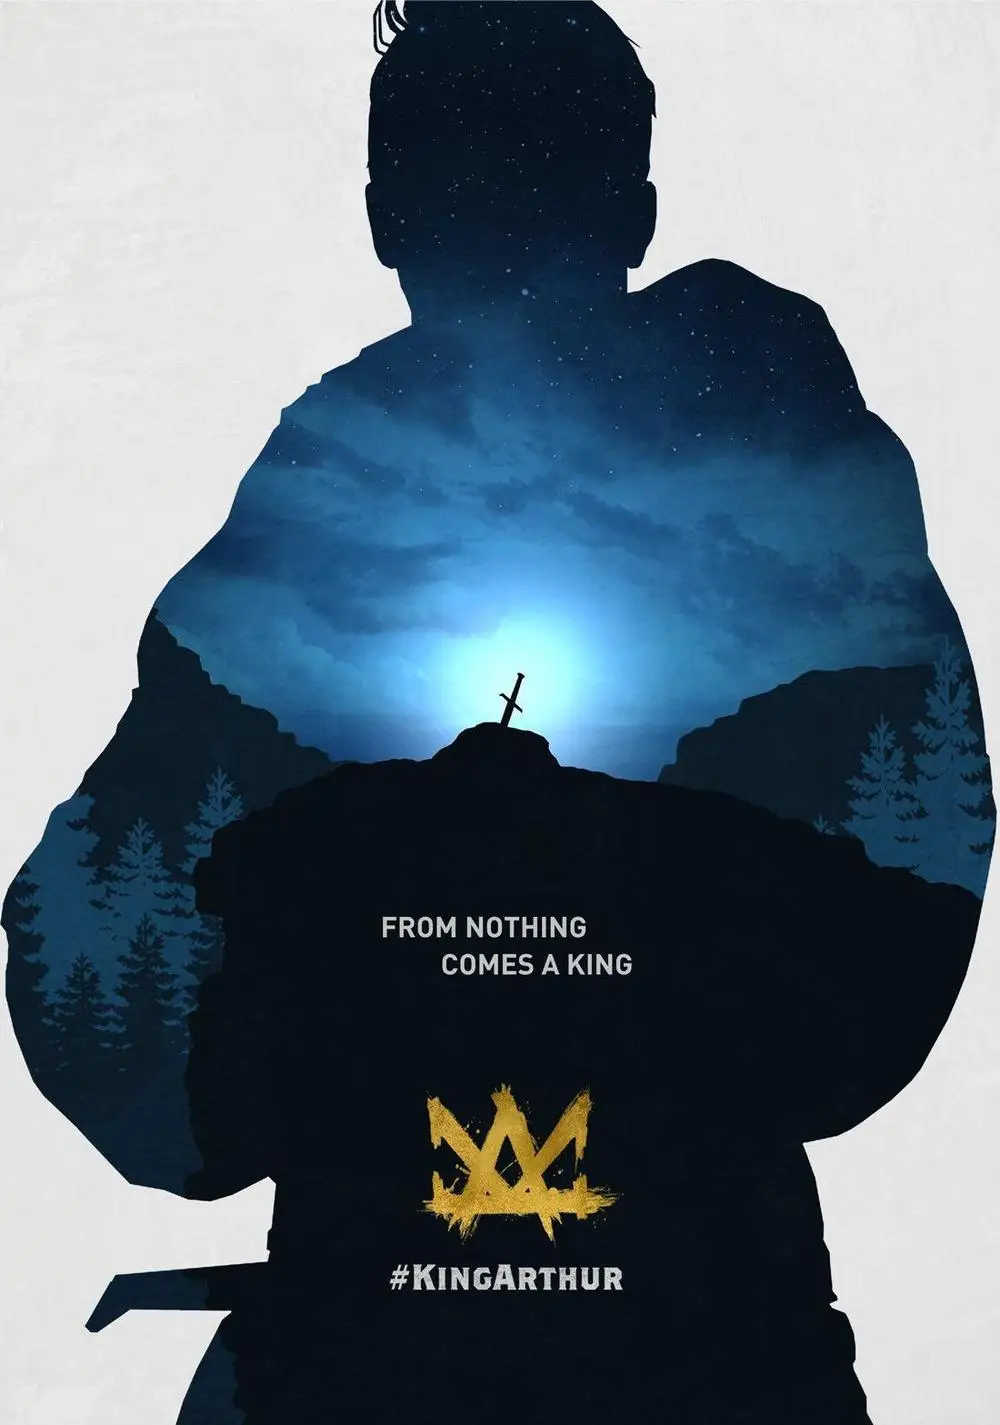 Король Артур: легенда о мече 2017 искусство фильма шелковая фотография 24x36 дюймов |